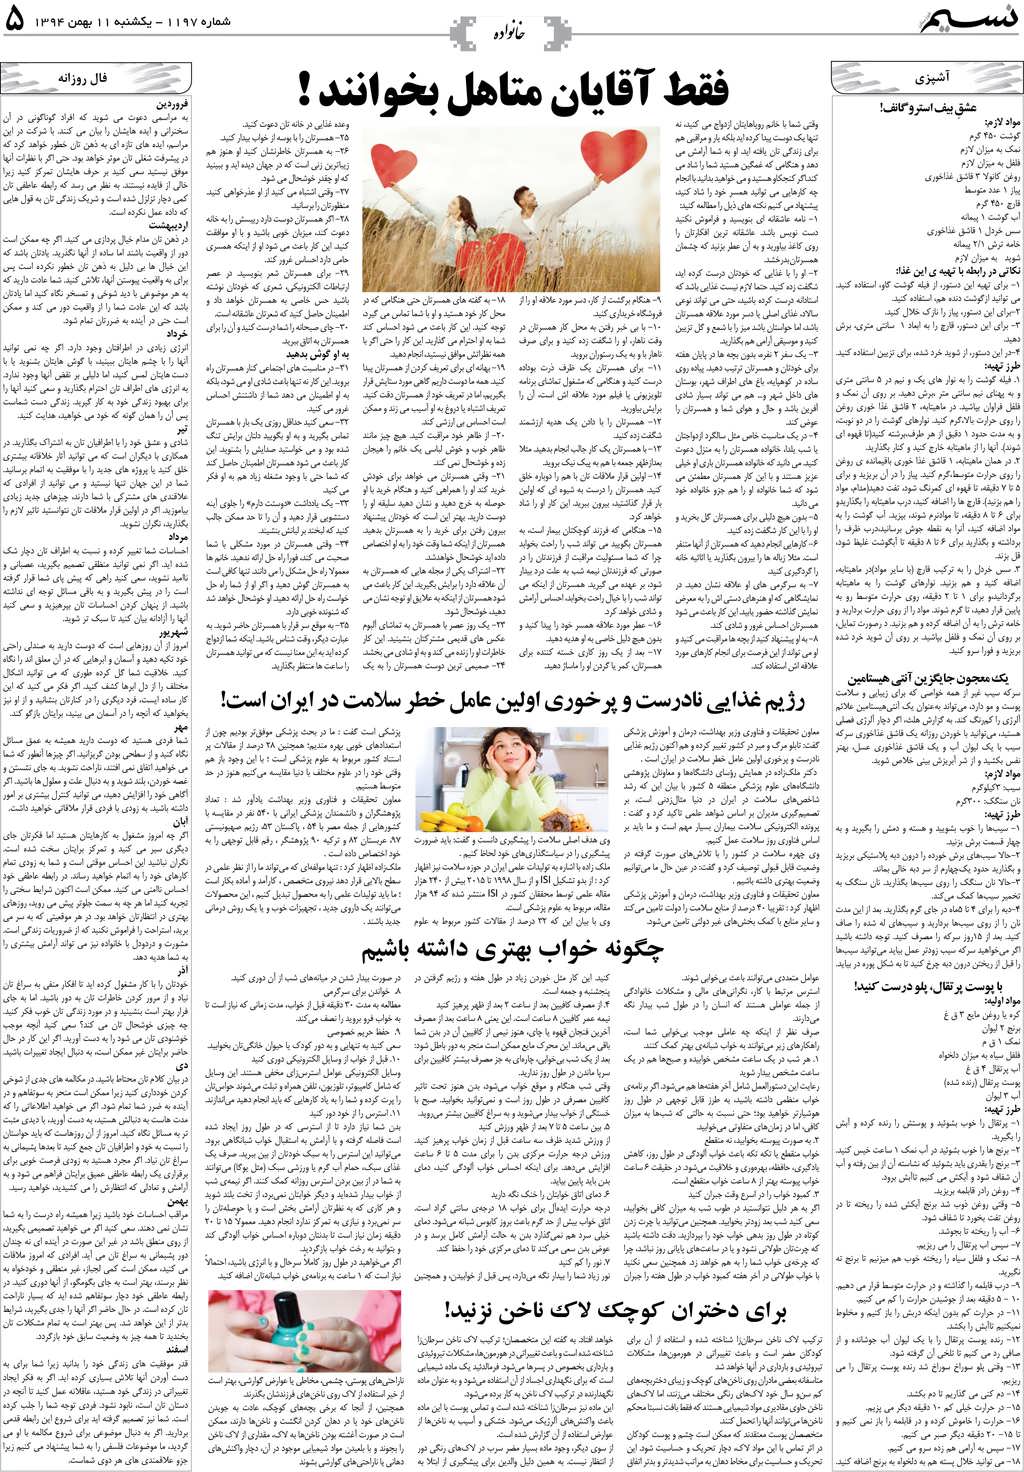 صفحه خانواده روزنامه نسیم شماره 1197